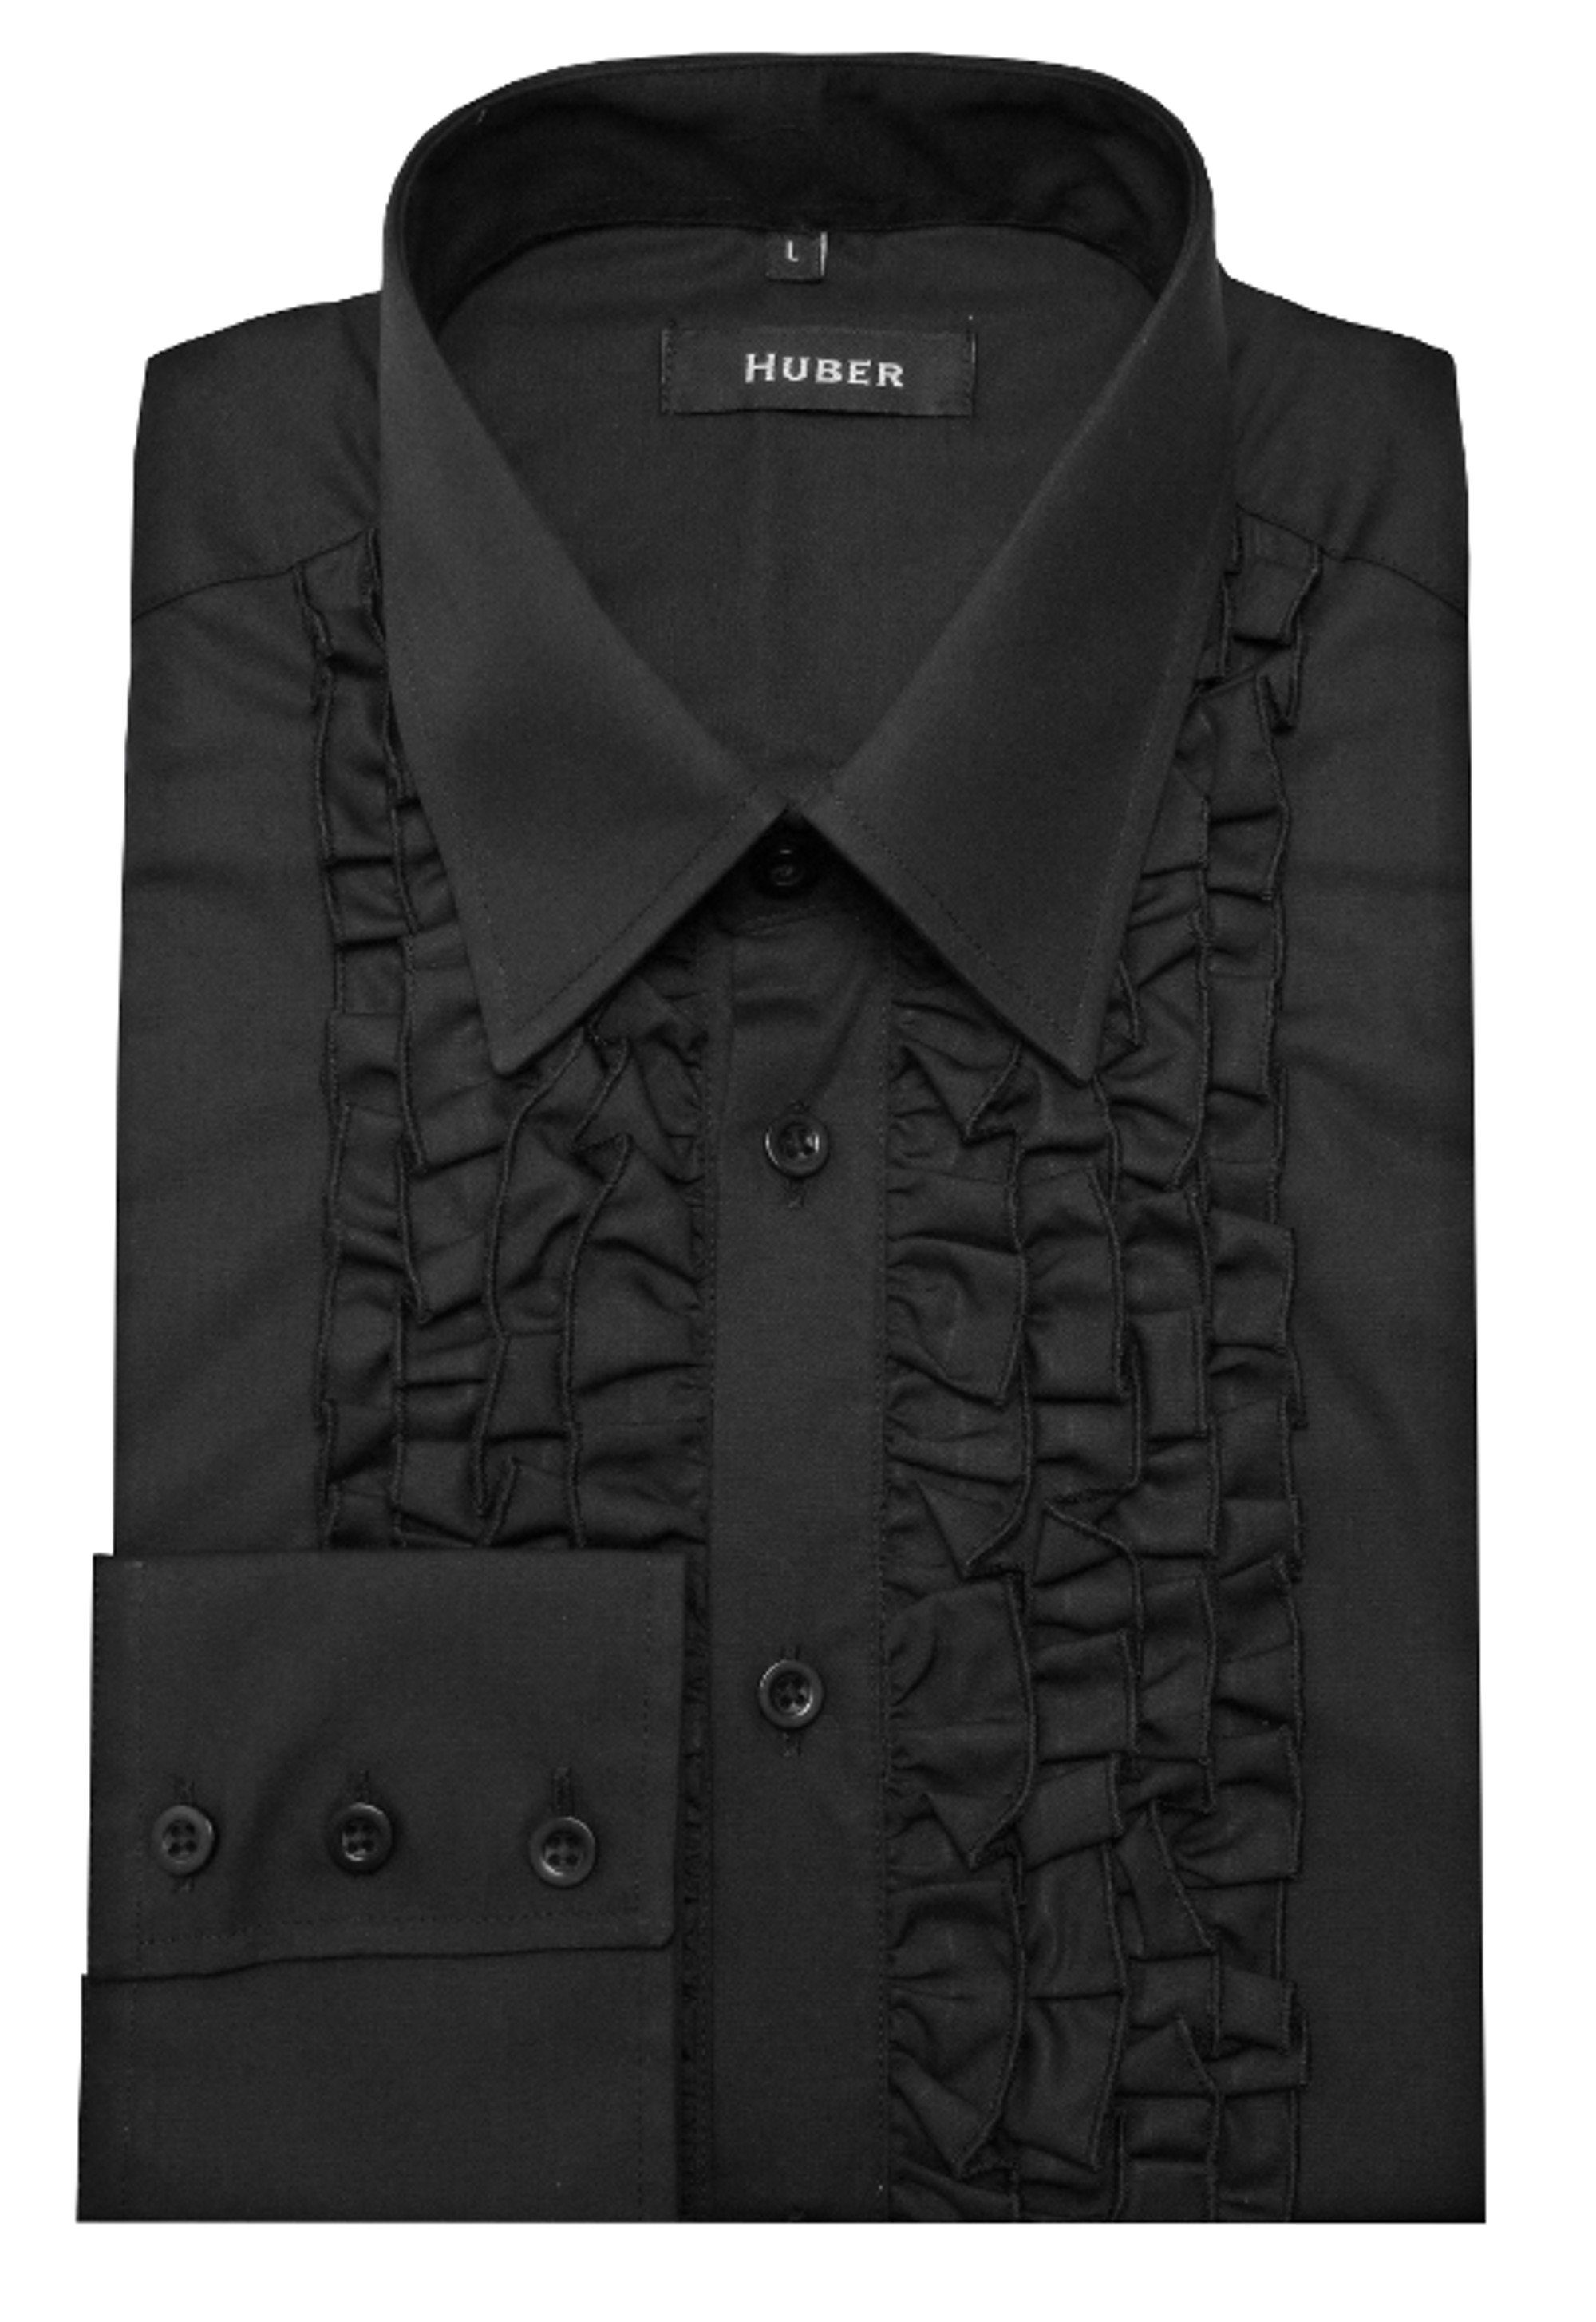 Regular Form Hemden Fit-bequeme weite im HU-0091 Langarmhemd Huber Vorderteil, Comfort Rüschen schwarz /